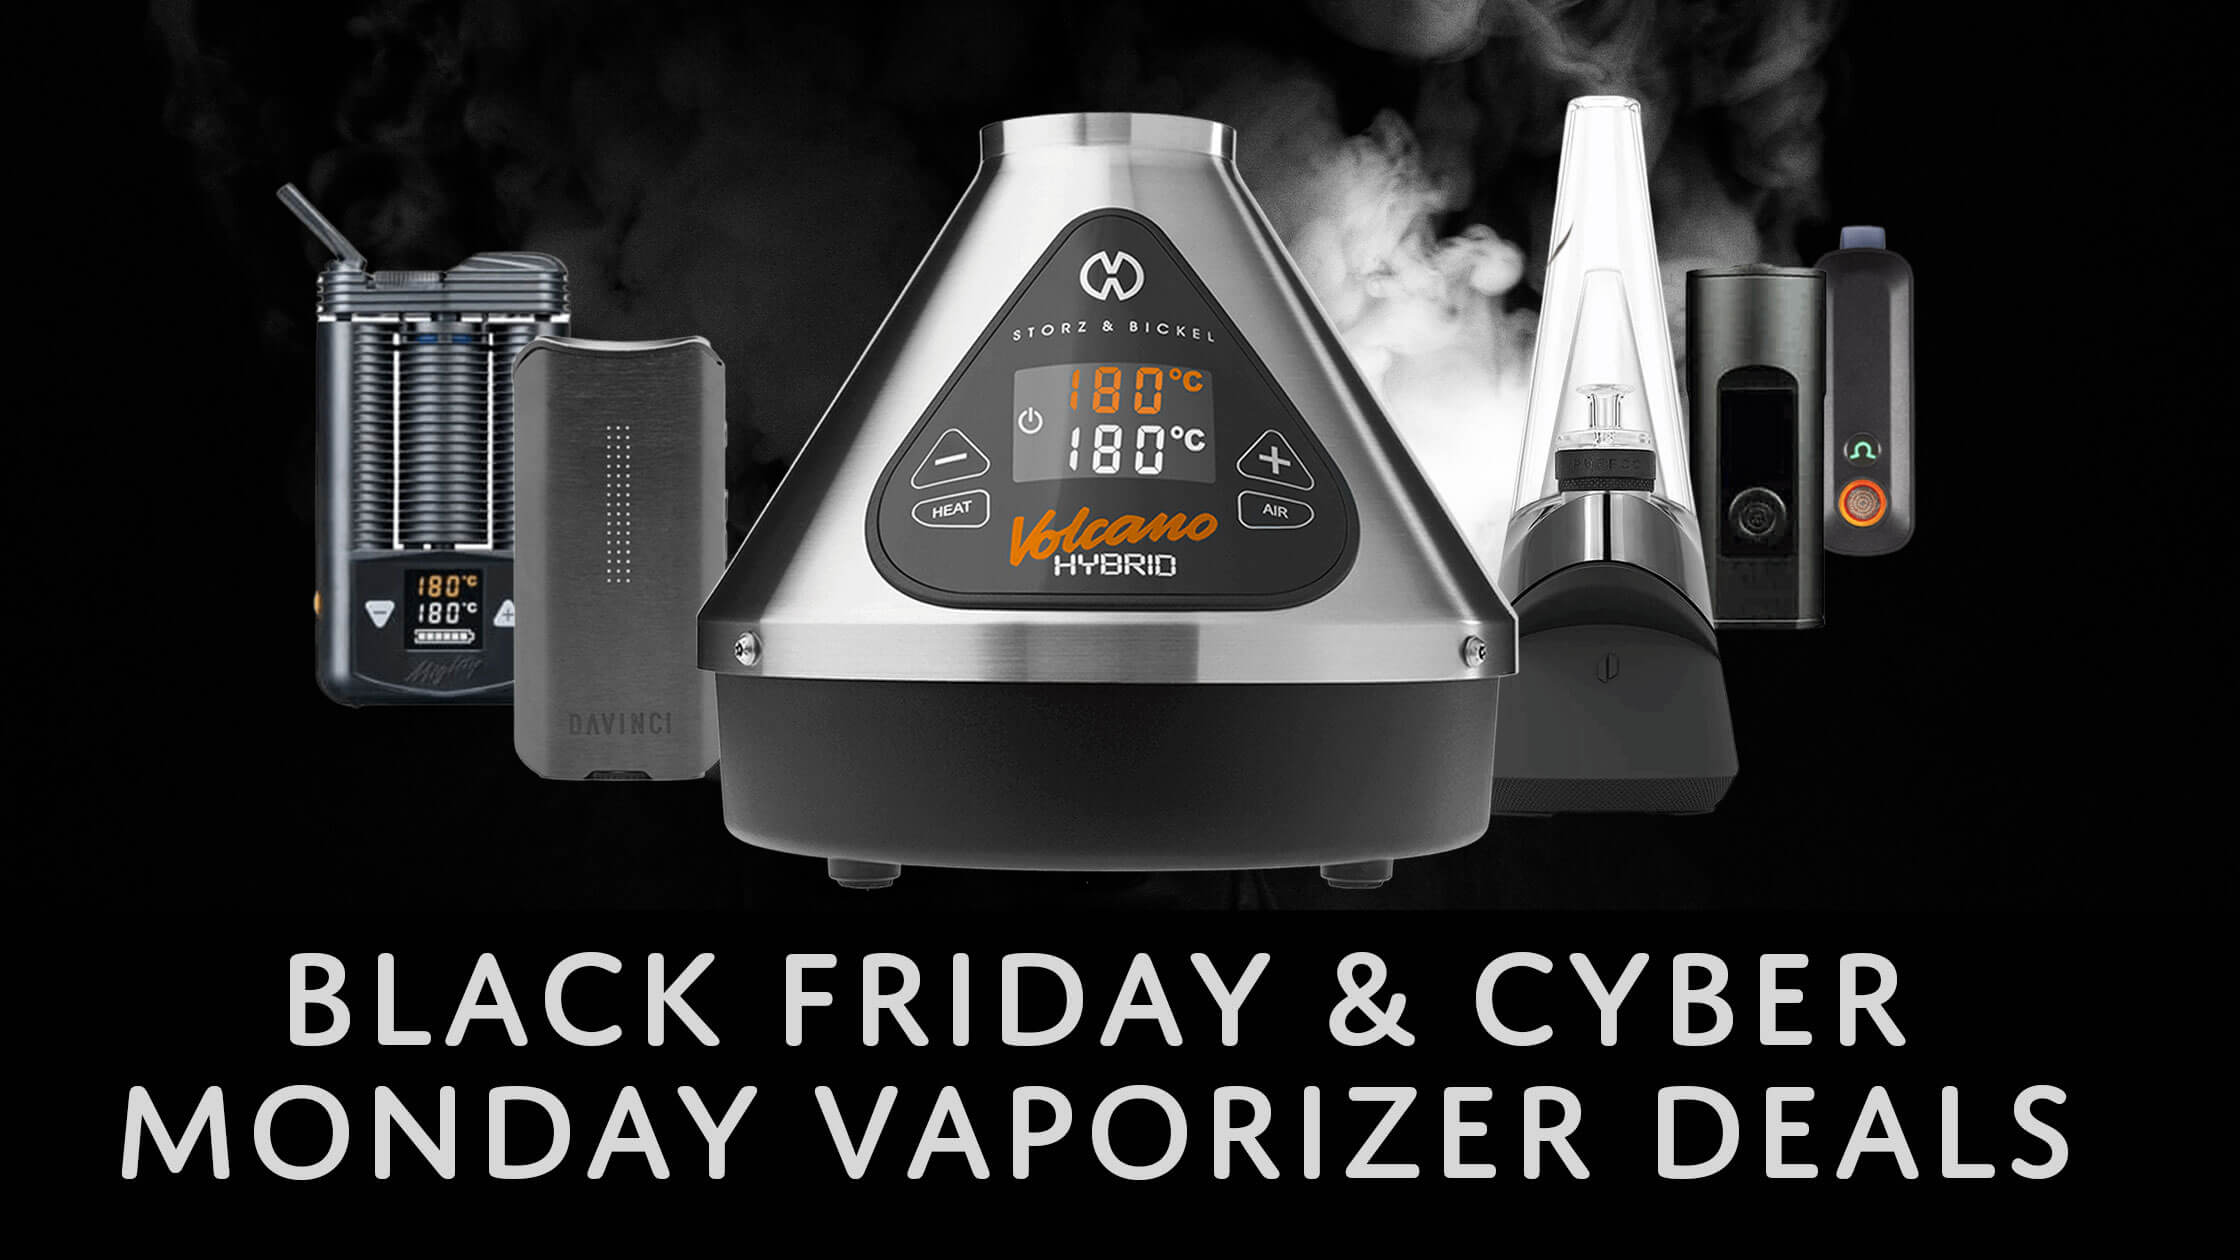 Black Friday & Cyber Monday Vaporizer Sales